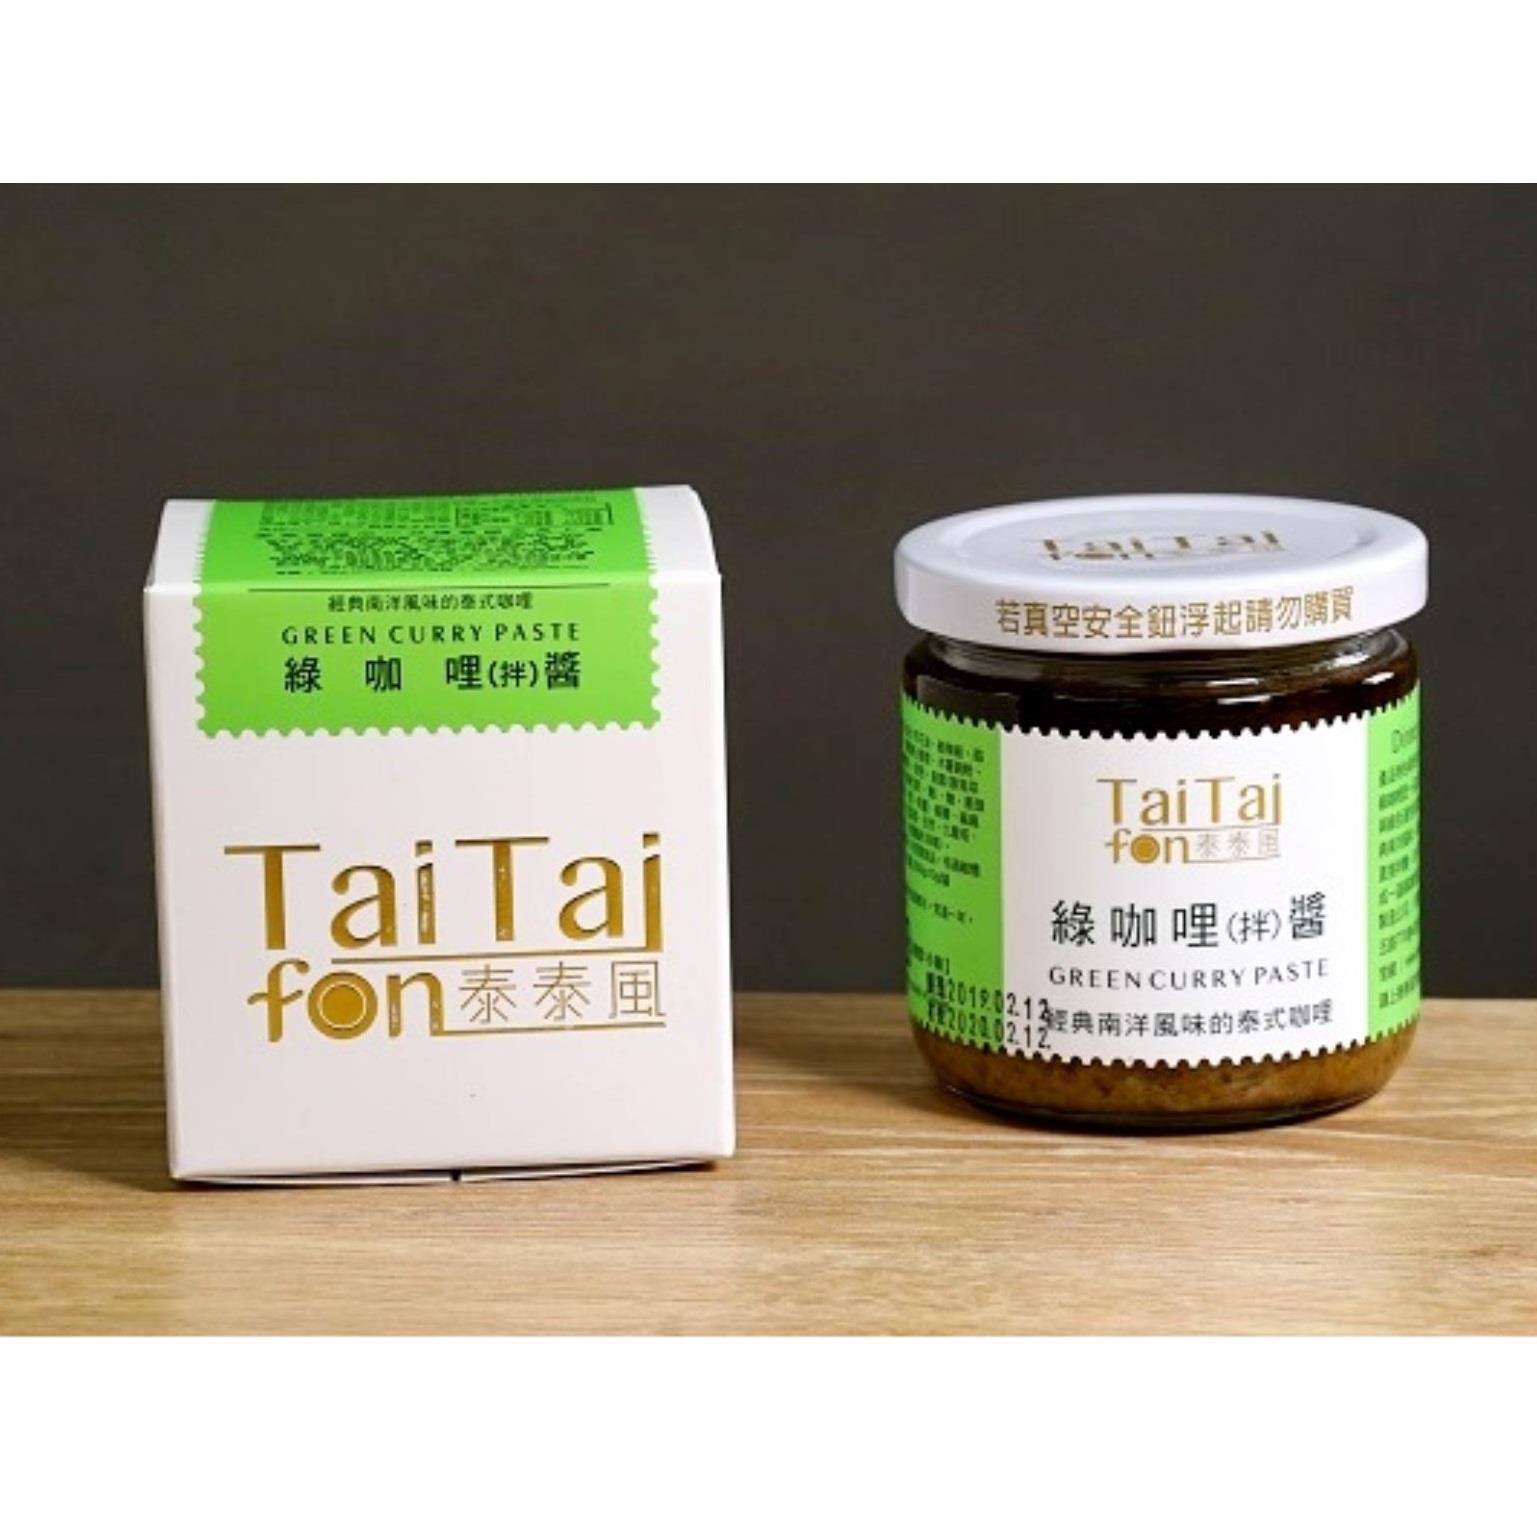 【TaiTai泰泰風】綠咖哩拌醬( 200g*1/罐)